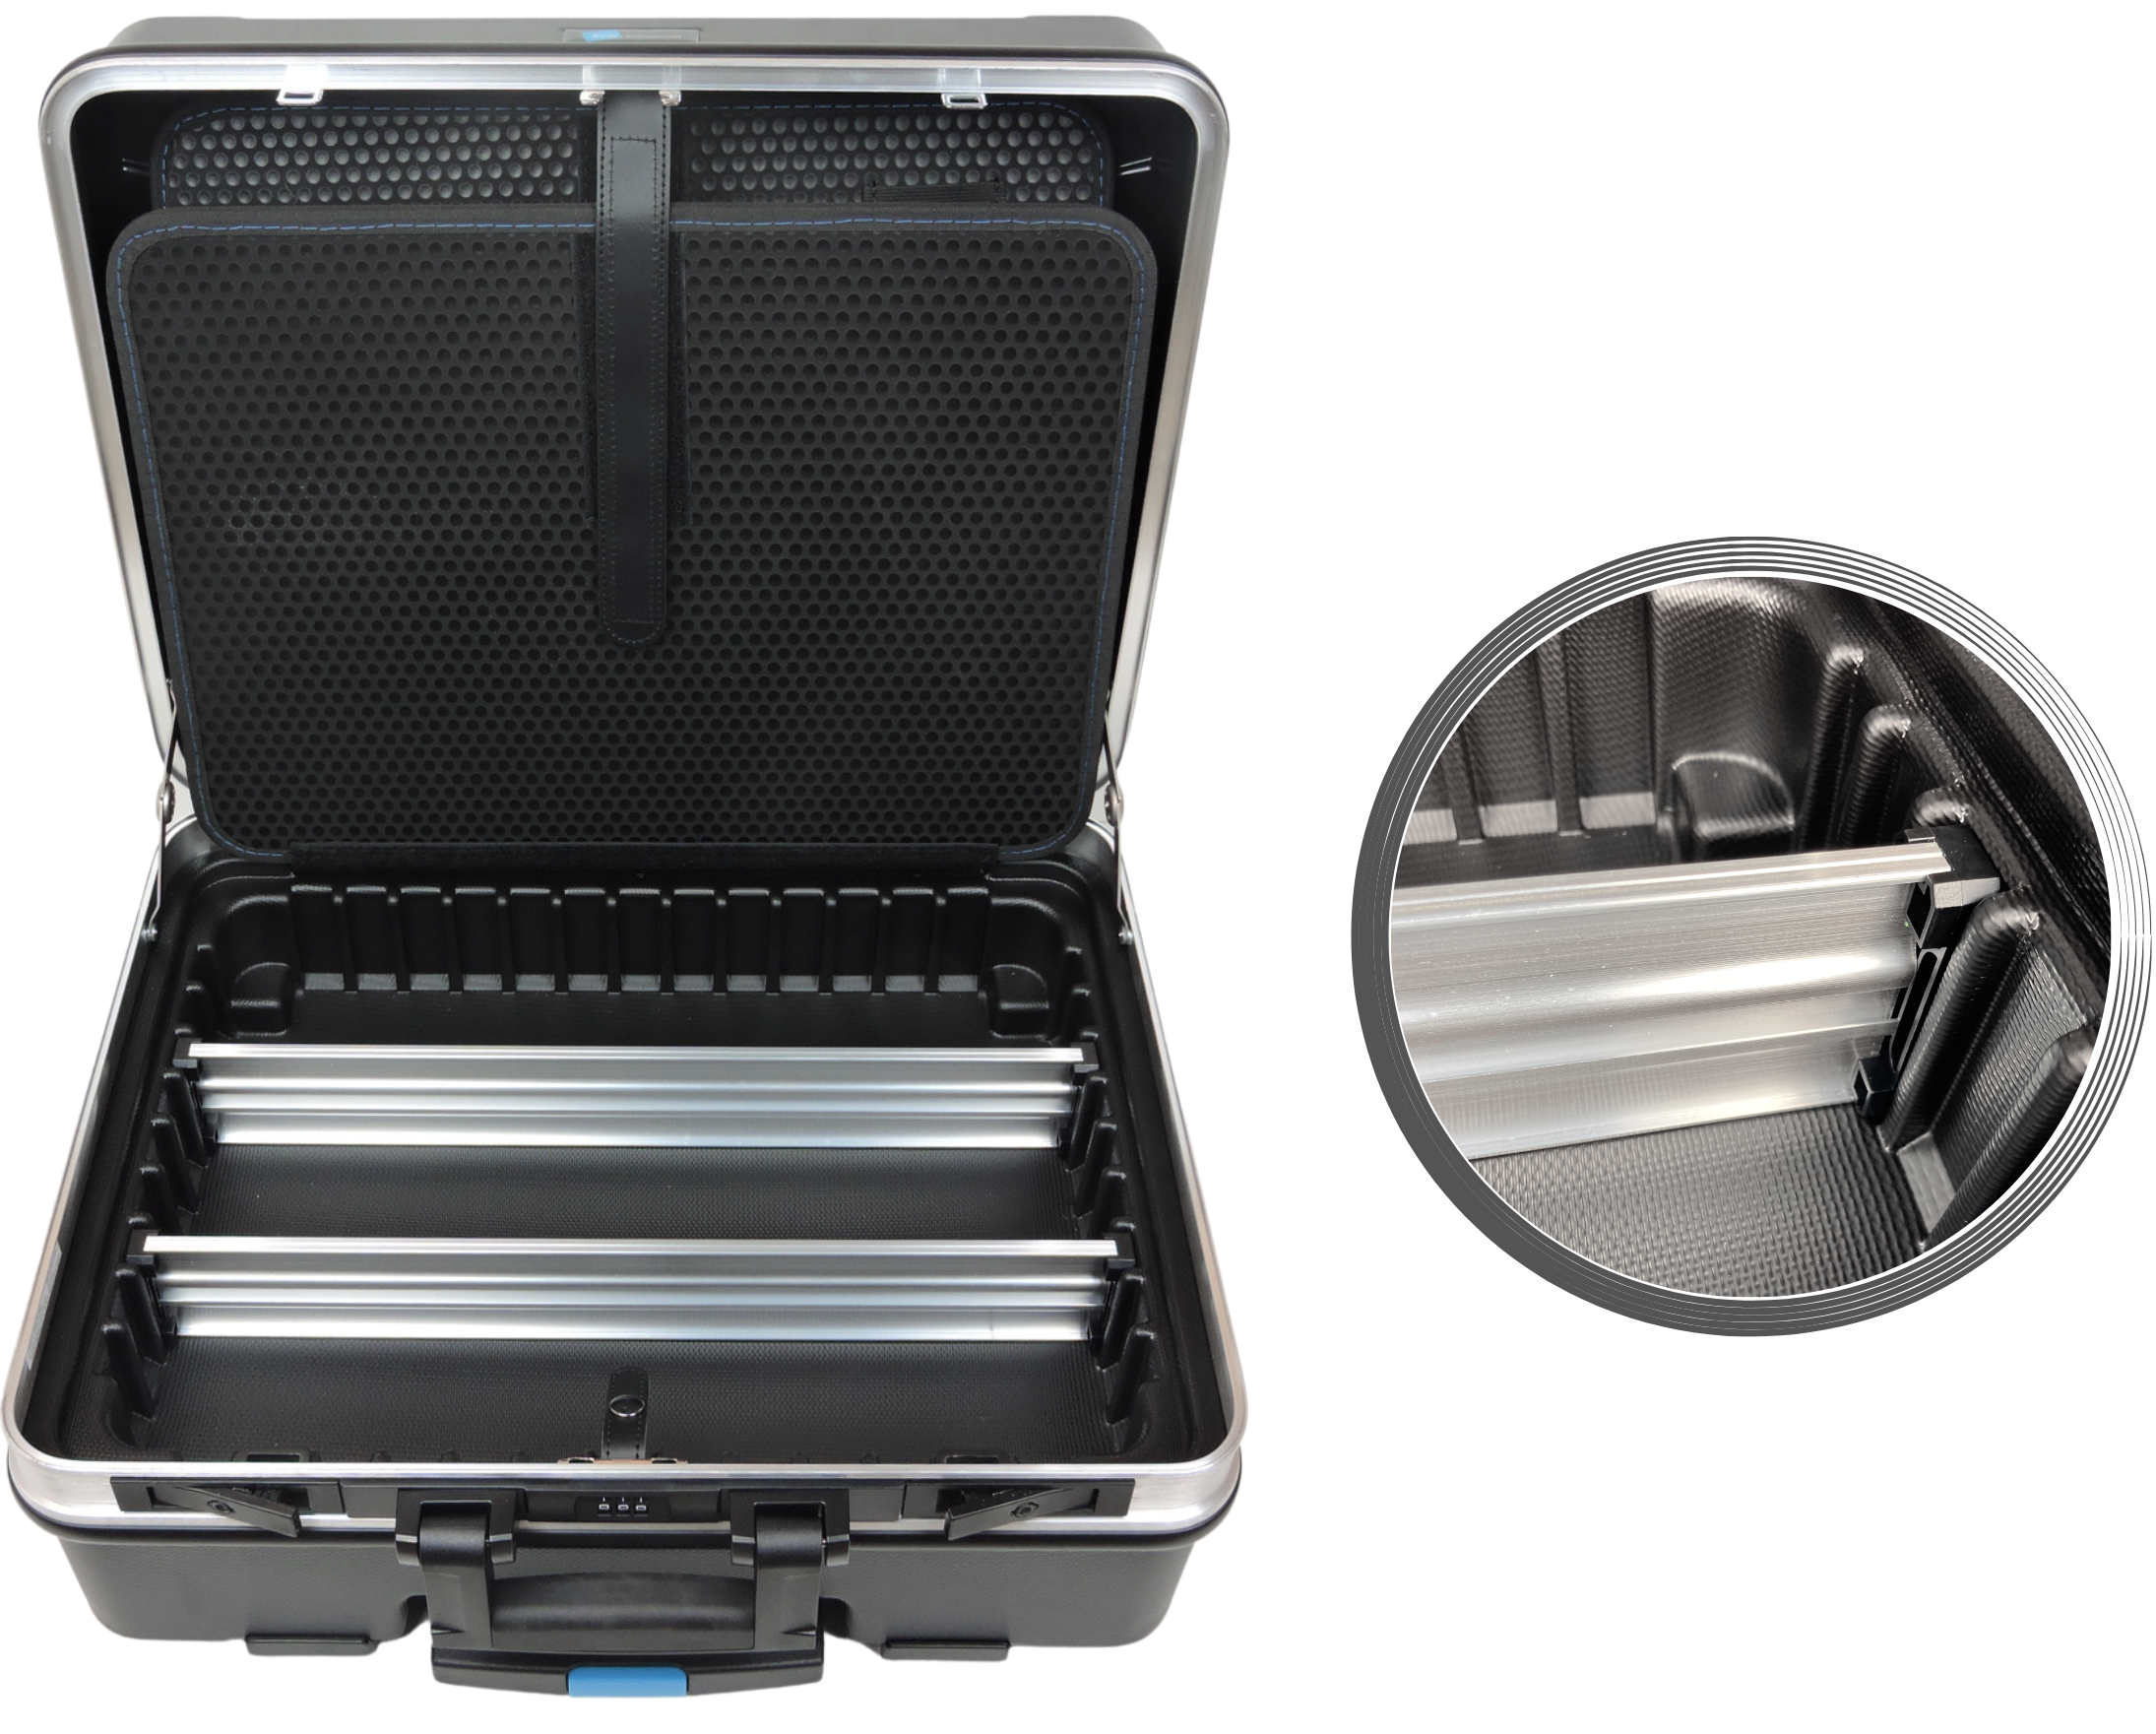 Werkzeuge günstig online kaufen - FAMEX 606-18 Tool Box with Socket Set -  High-End Quality